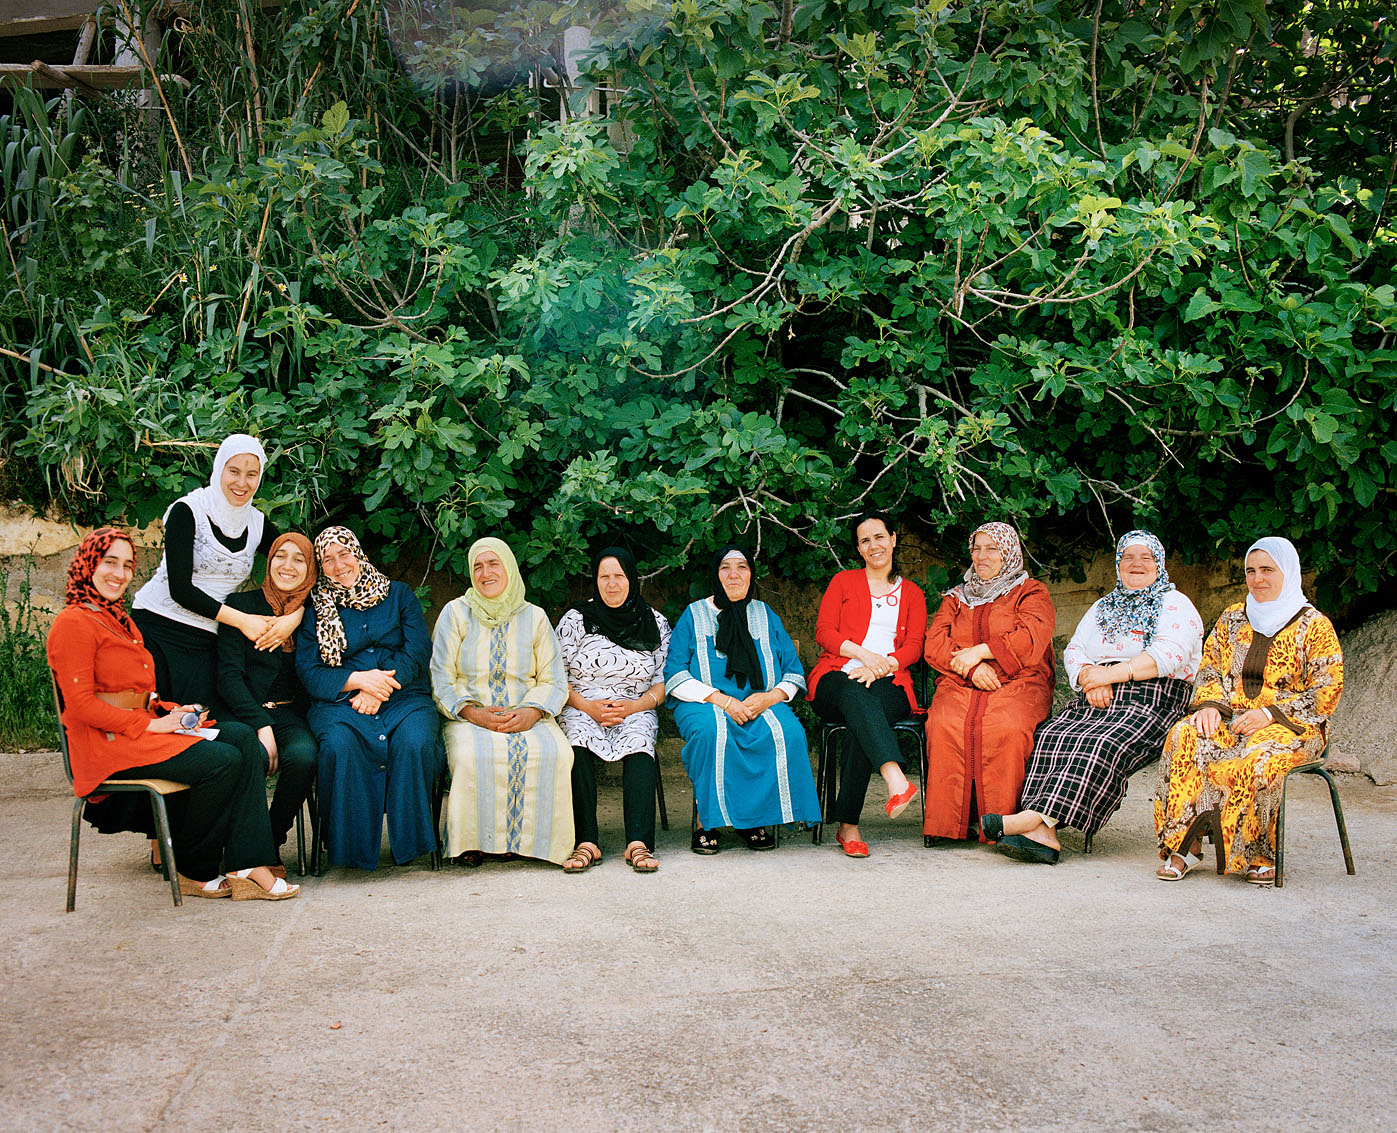 Les femmes de la coopérative Achifae (guérison en Berbère) du village de Ben Smim, Maroc.